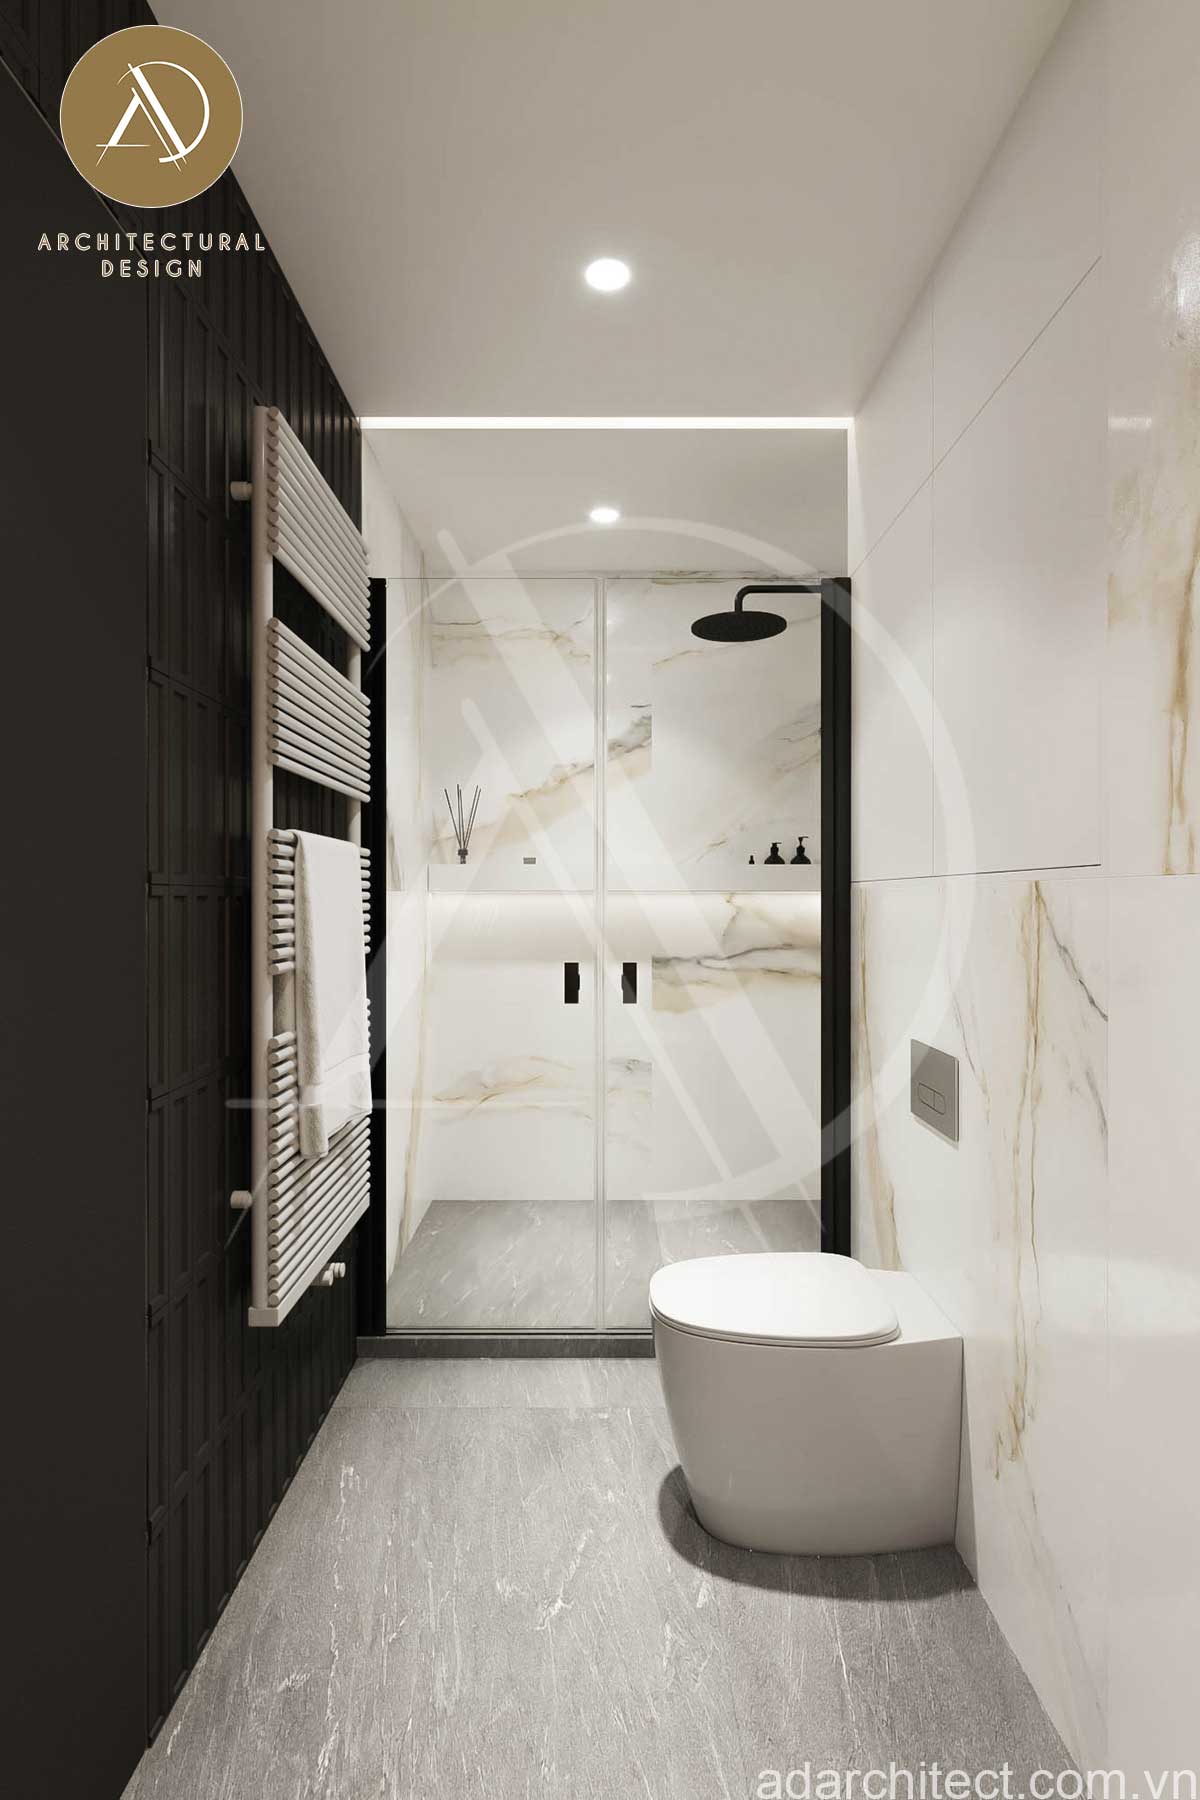 biệt thự 1 tầng 4 phòng ngủ: Ốp tường vân đá tạo được hiệu ứng trang trí nội thất cao cho nhà vệ sinh